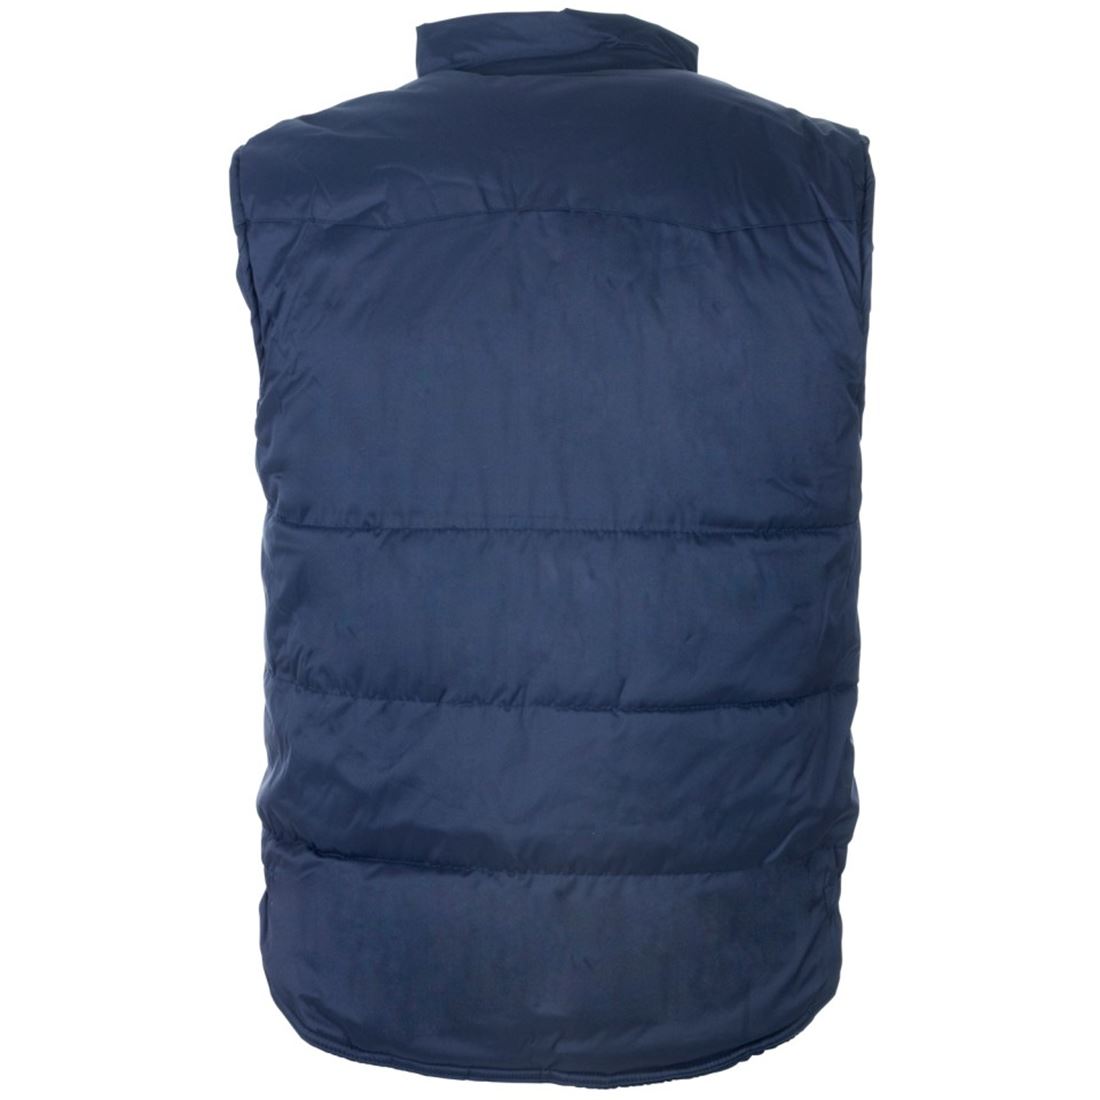 Mens Casual Sleeveless Multi Pocket Bodywarmer Adults Plain Winter Wear Vest Top